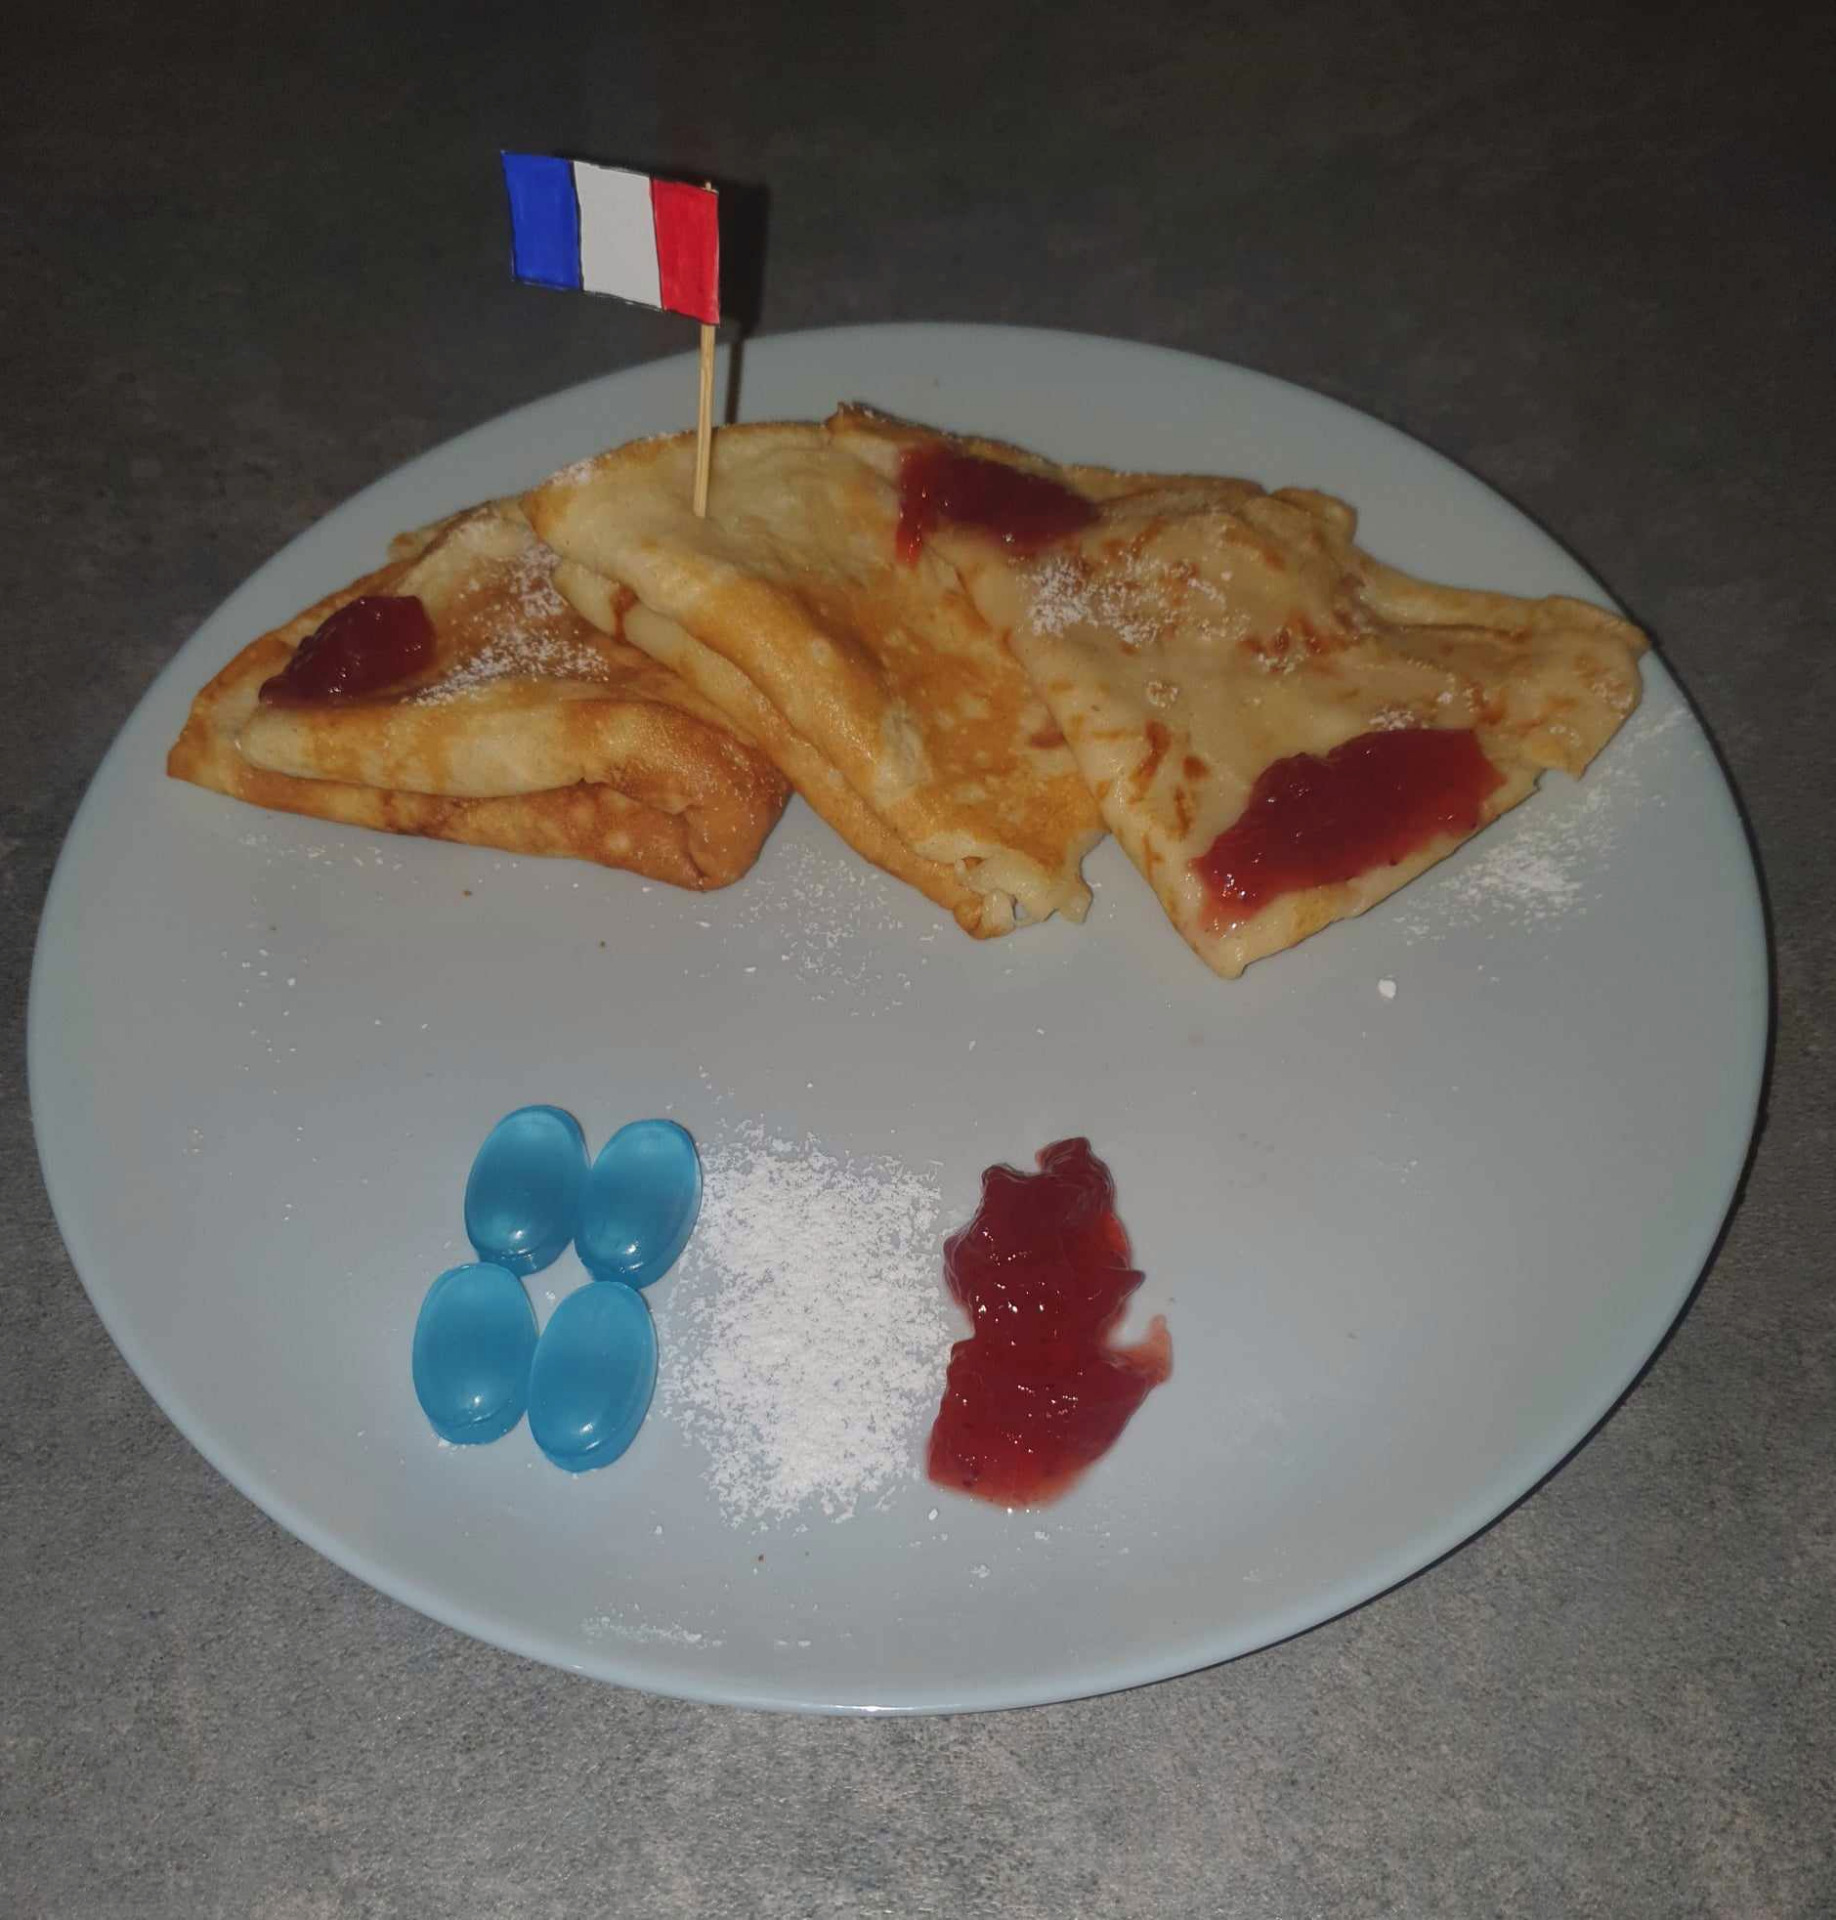 Zdjęcie przedstawia naleśniki oraz flagę Francji